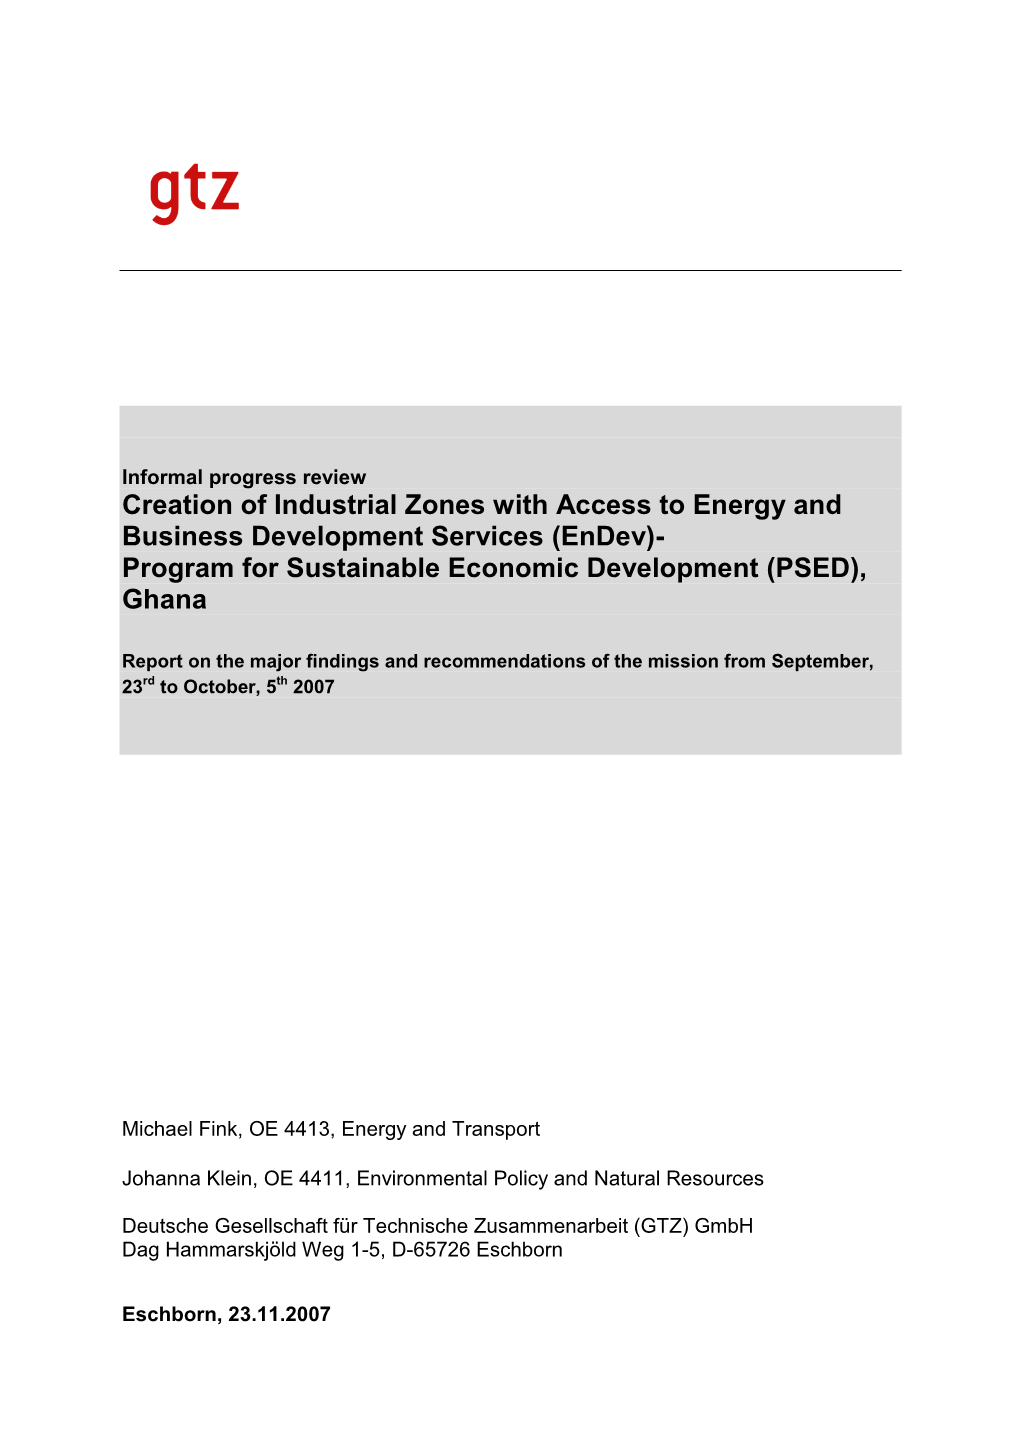 (Endev)- Program for Sustainable Economic Development (PSED), Ghana